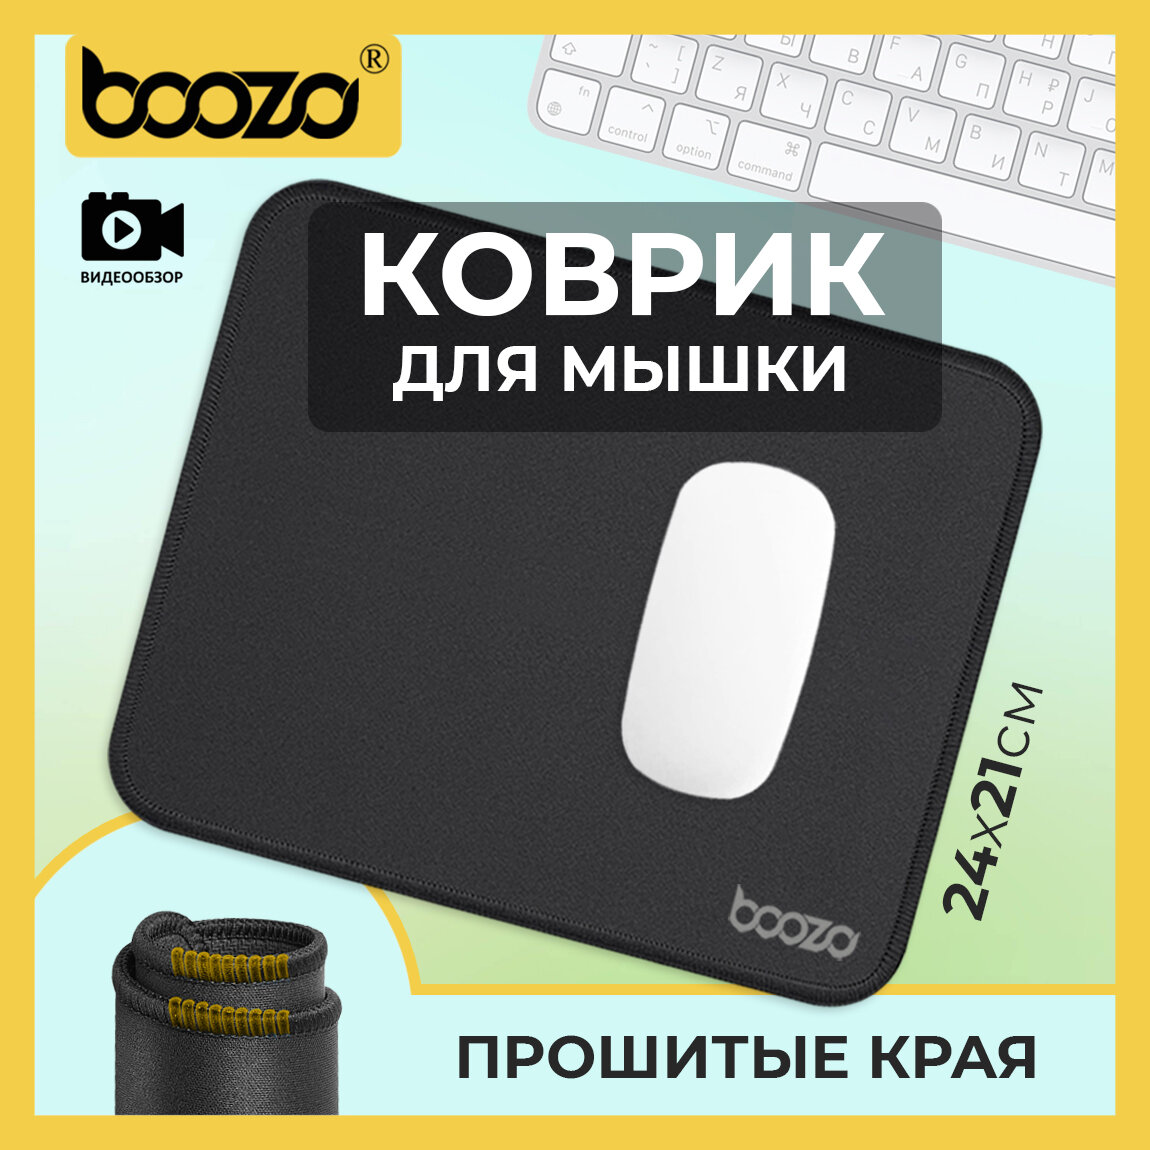 Коврик для мышки маленький игровой BOOZO mini, тканевый коврик для мыши, коврик для мышки компьютерный черный